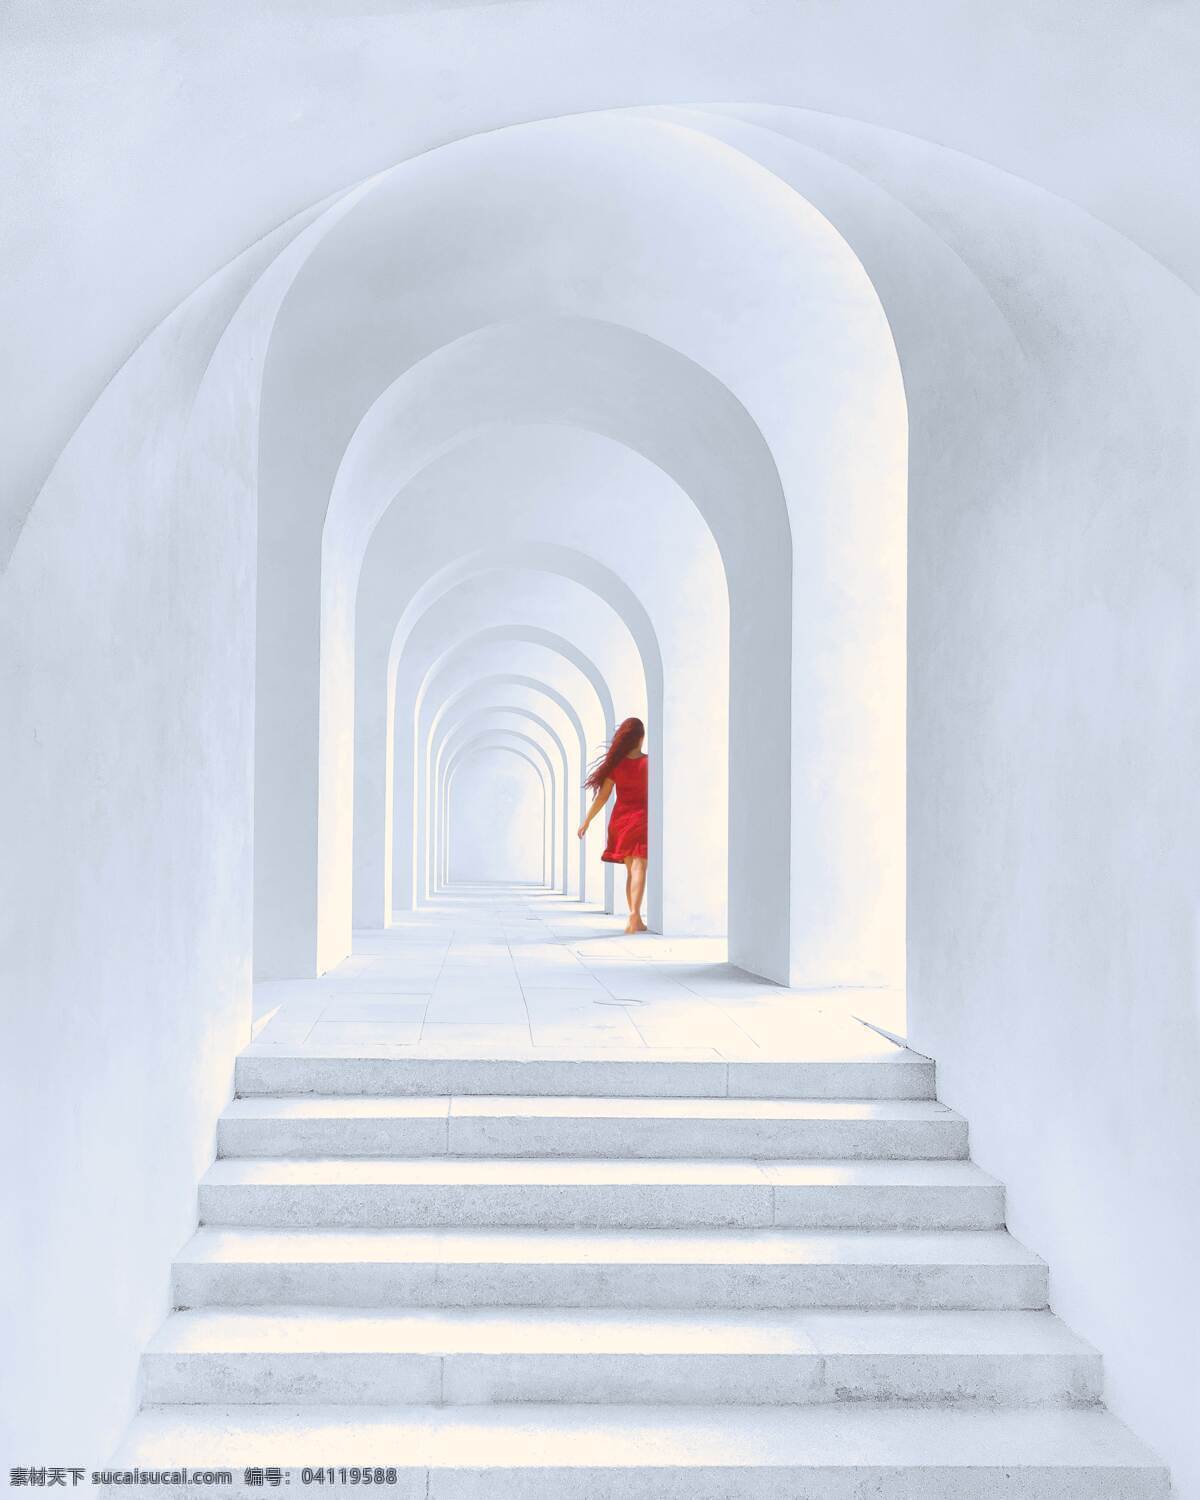 白与红 白色 纯白 红色 模特 美女 城堡 台阶 墙壁 梦幻 空旷 回廊 回音 背影 裙子 长发 光线 阳光 人物图库 人物摄影